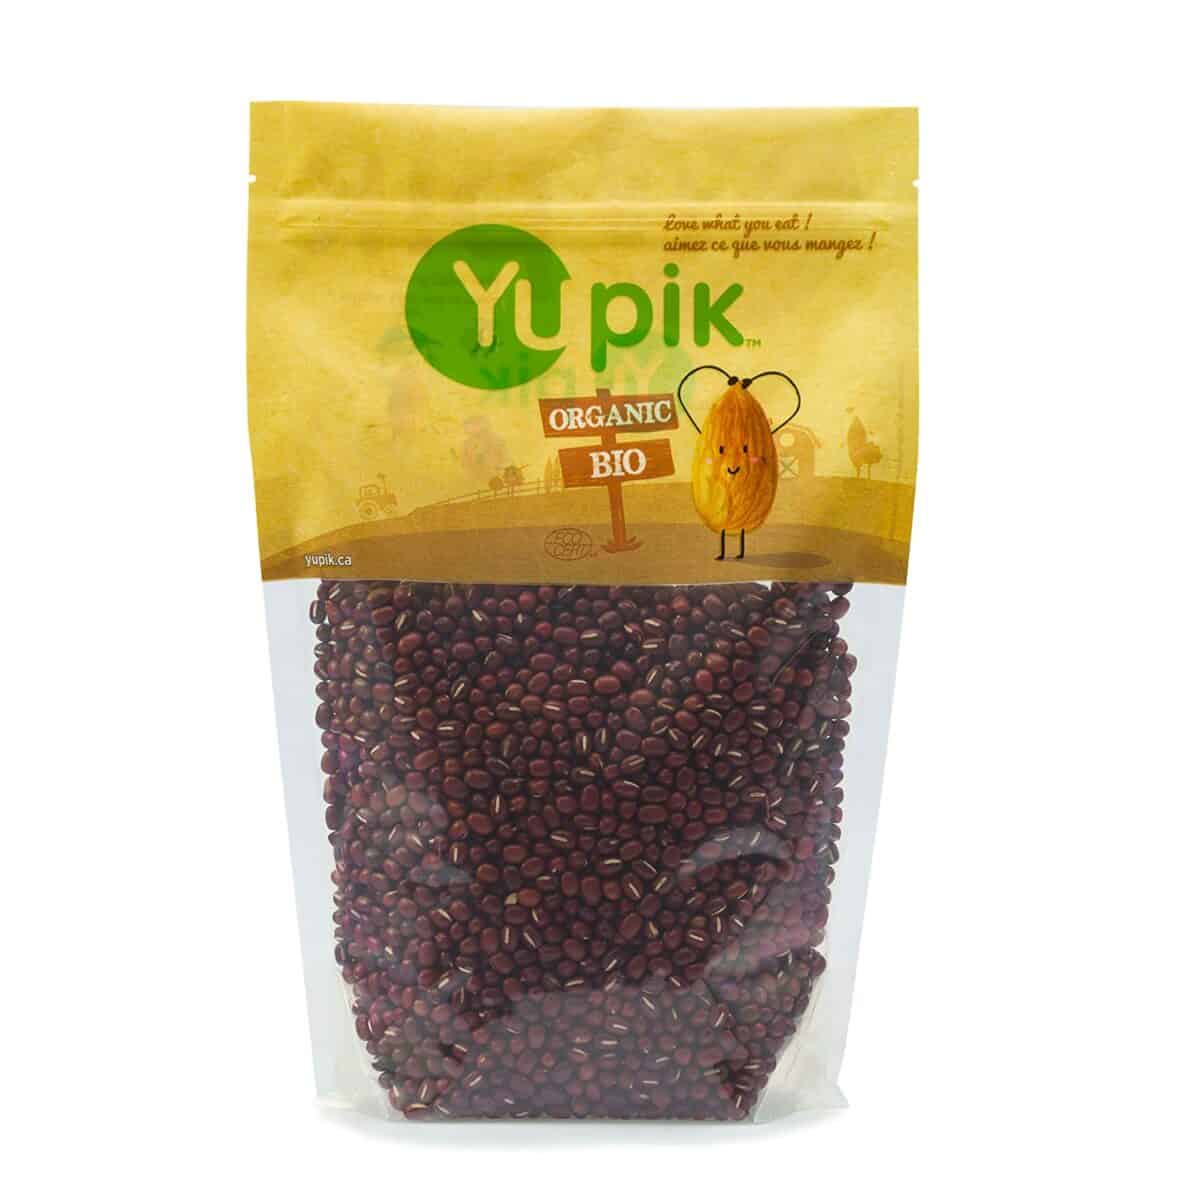 Yupik Organic Adzuki Beans som ersättning för mungbönor